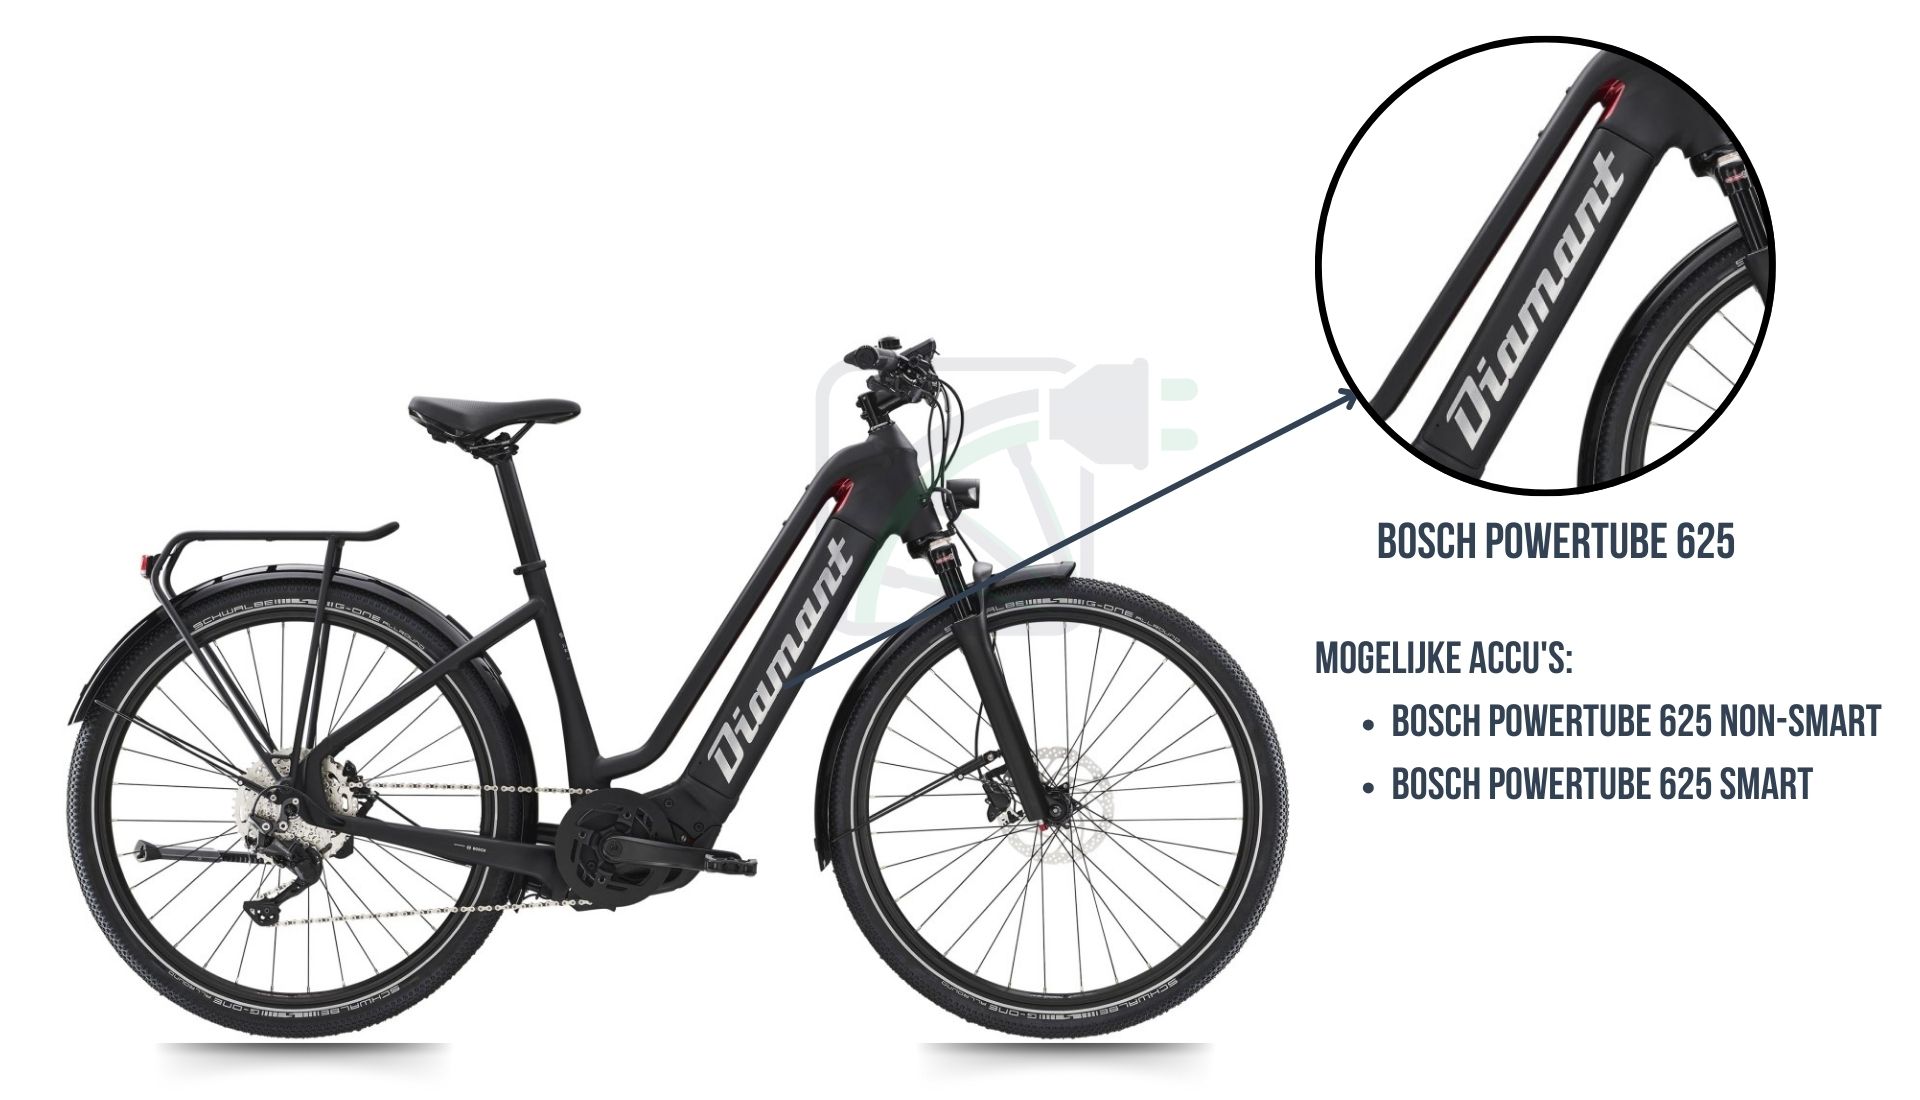 La bicicleta eléctrica Diamant Zouma, con énfasis en cuál batería de bicicleta le corresponde. Esta es, de hecho, la Bosch Powertube 625 SMART o la Bosch Powertube 625 non-SMART.